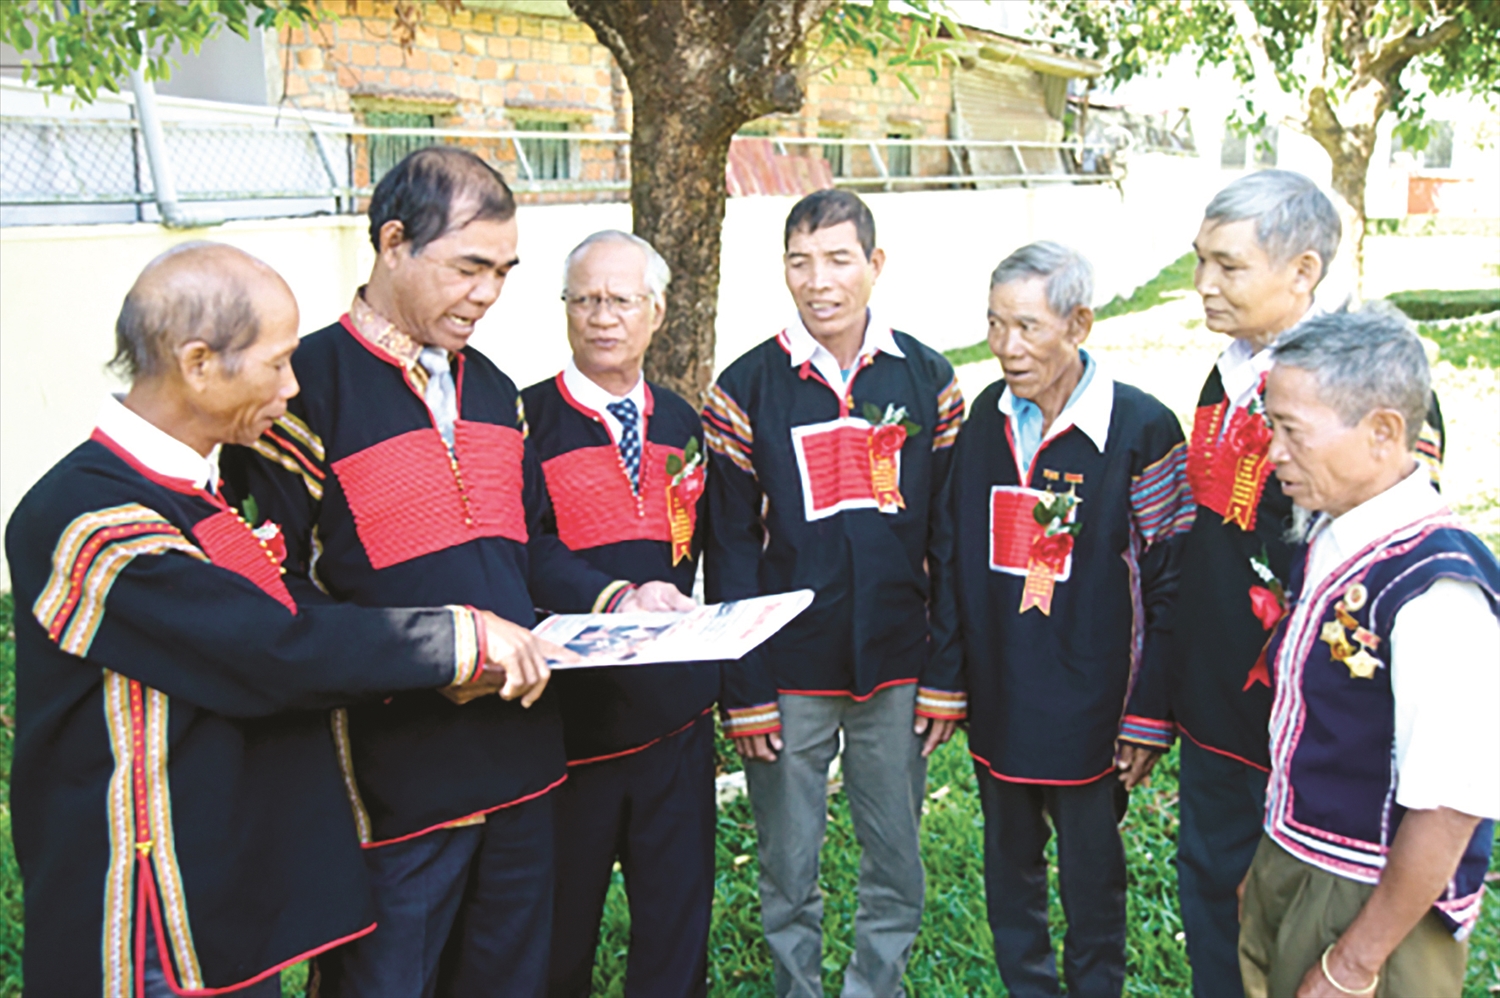 Các già làng tiêu biểu trong cộng đồng các dân tộc Tây Nguyên trao đổi kinh nghiệm trong công tác xã hội. (Ảnh: Thái Kim Nga)